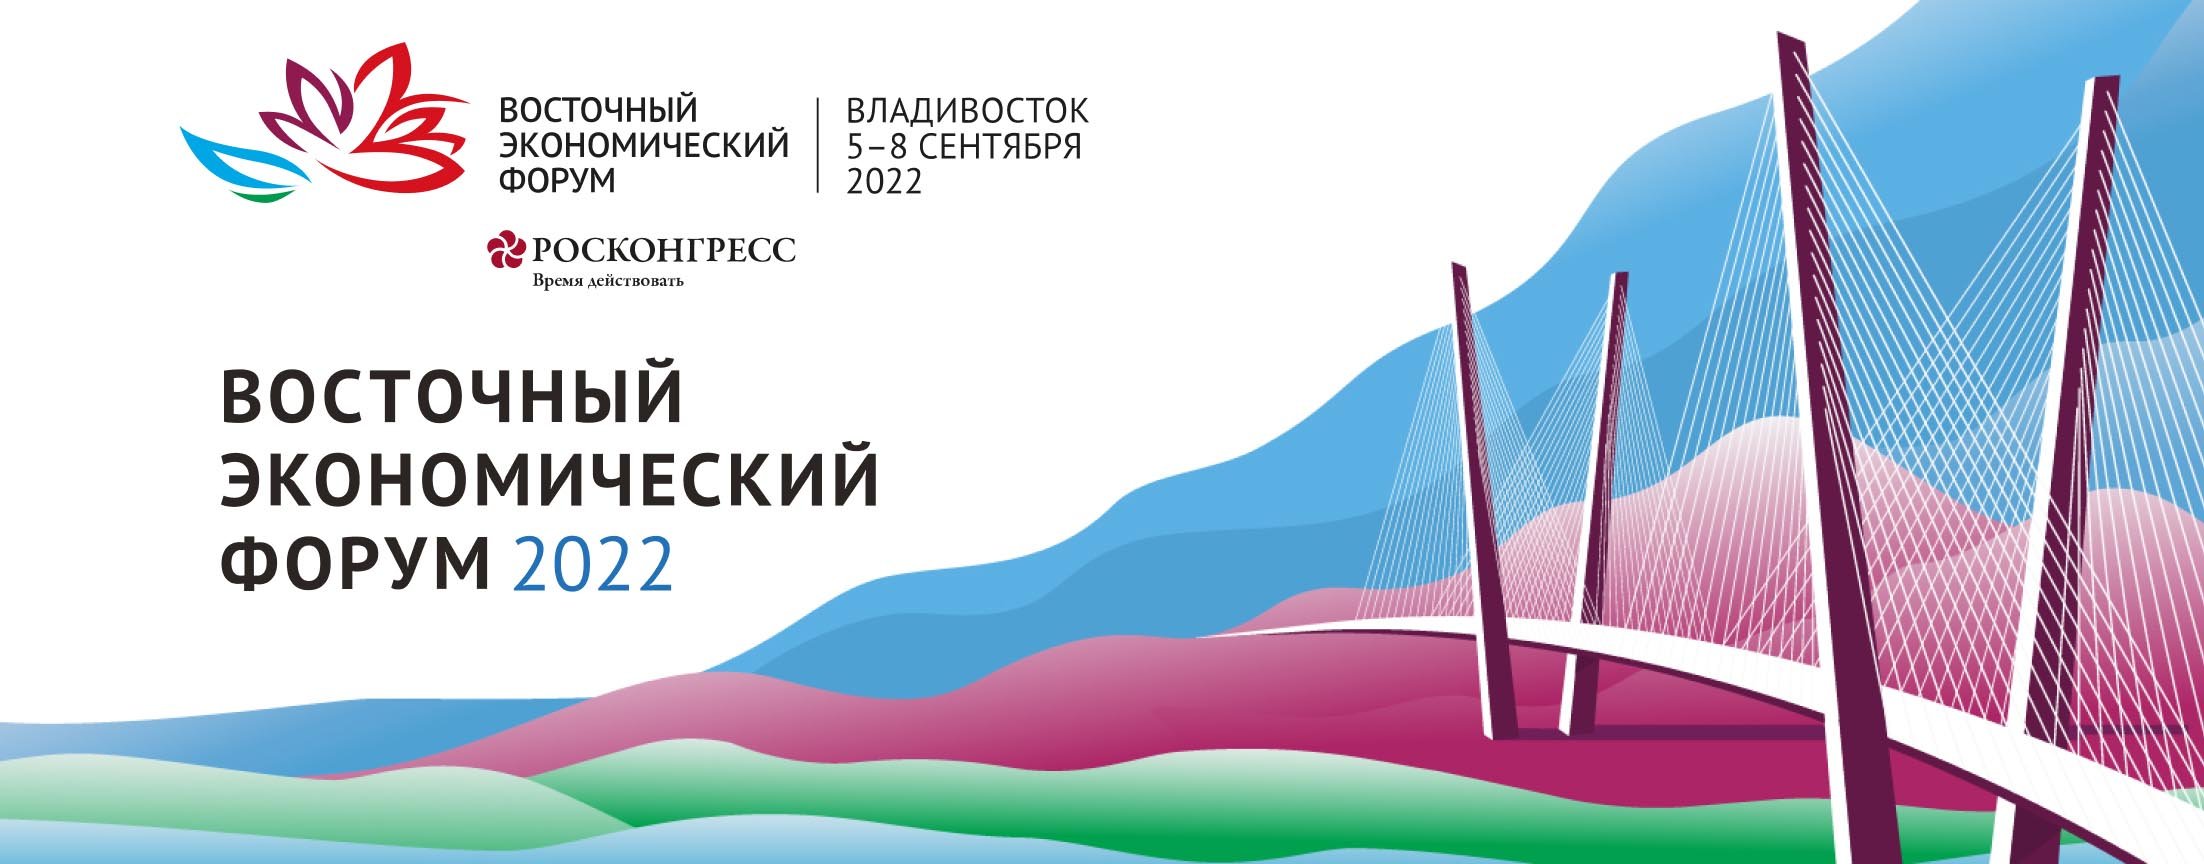 Восточный экономический форум 2022